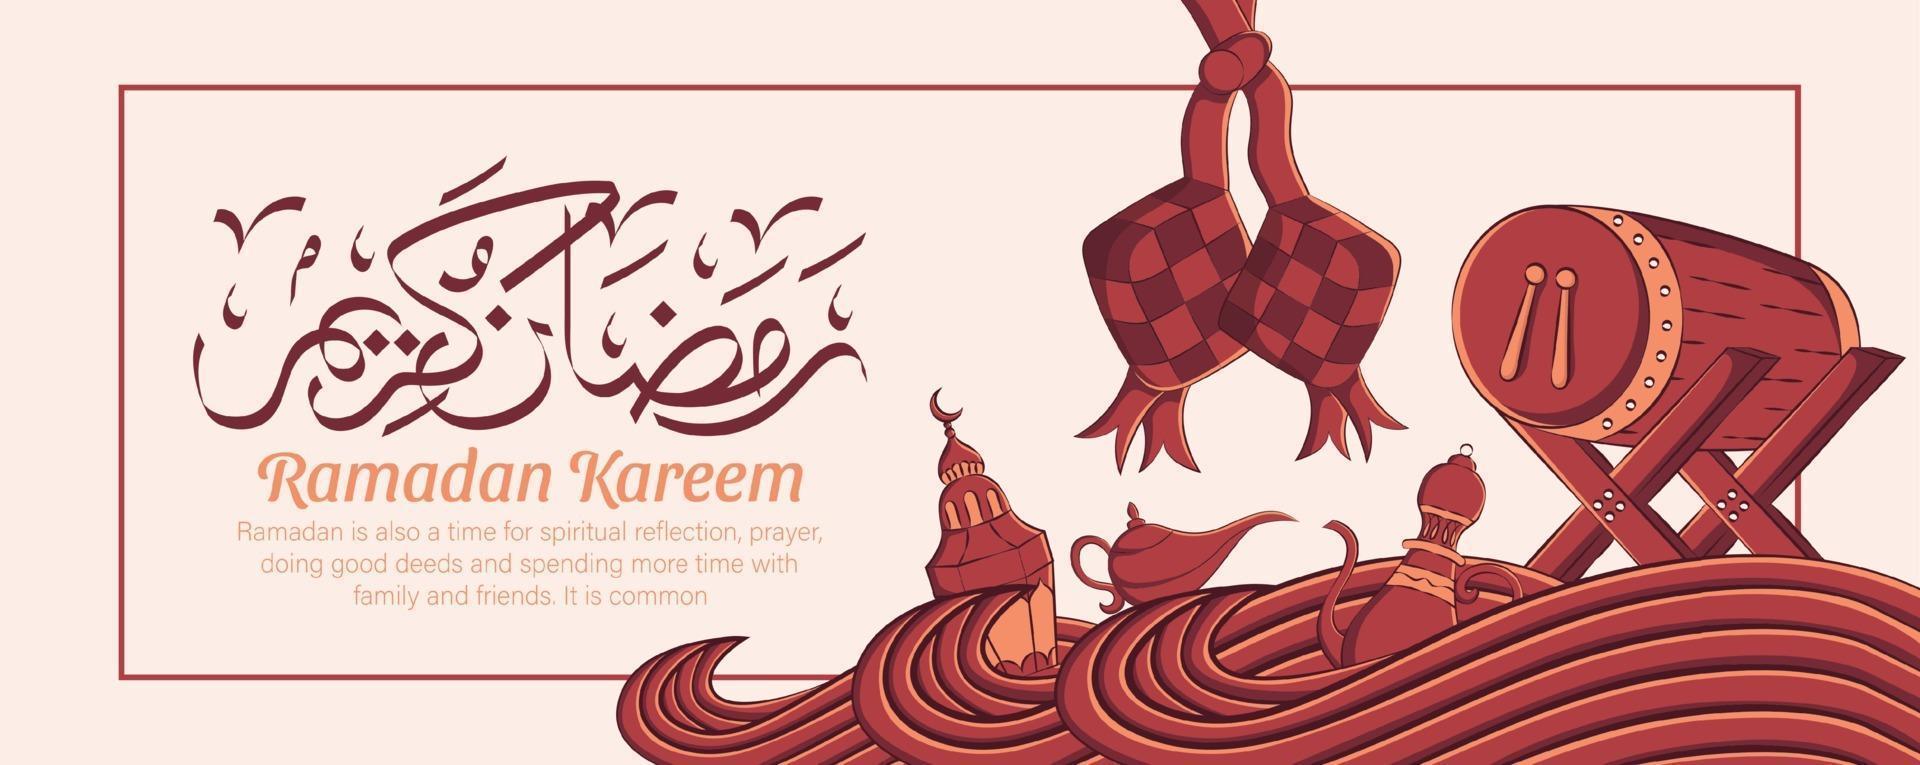 Banner de Ramadán Kareem con adornos de ilustración islámica dibujados a mano sobre fondo blanco. vector